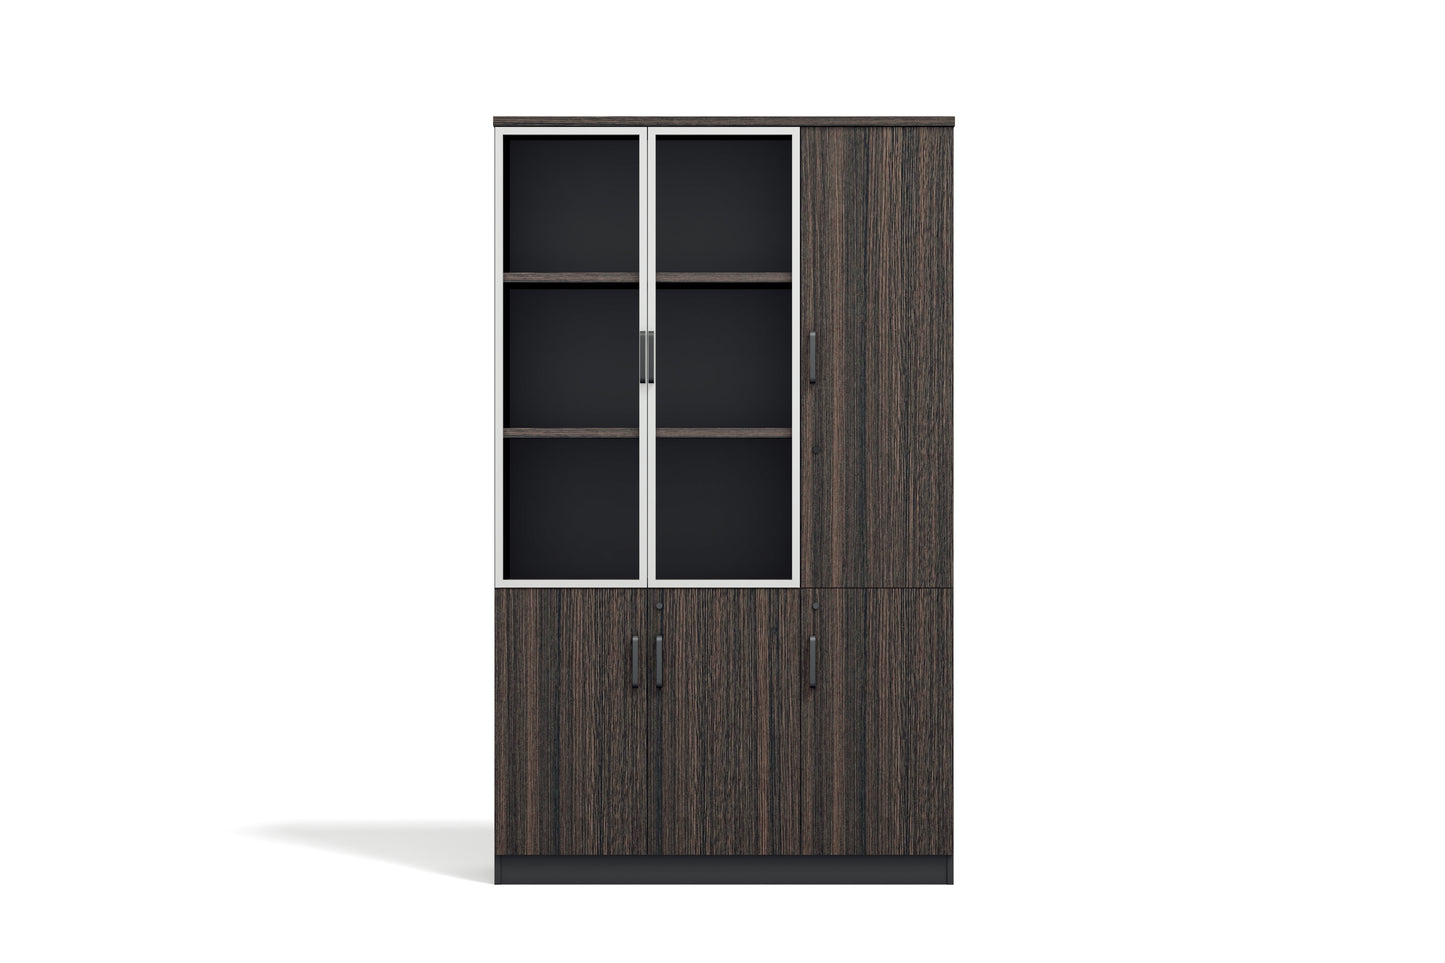 RYE Office Cabinet With 2 Glass Swing Doors - Dark Walnut